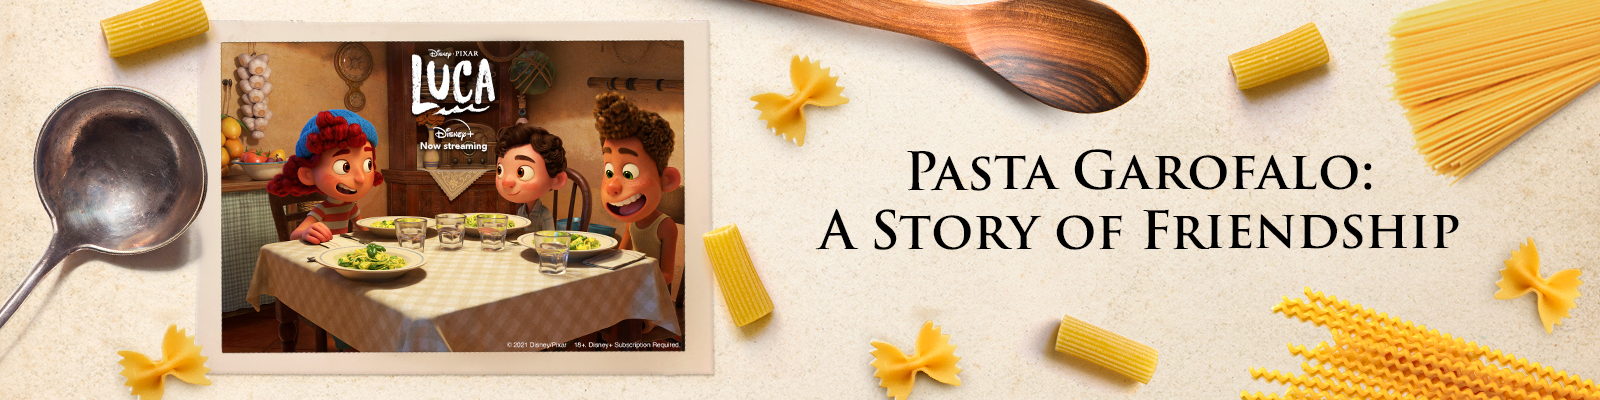 Pasta Garofalo firar Smaken av Italiensk Sommar med Disney och Pixars Luca